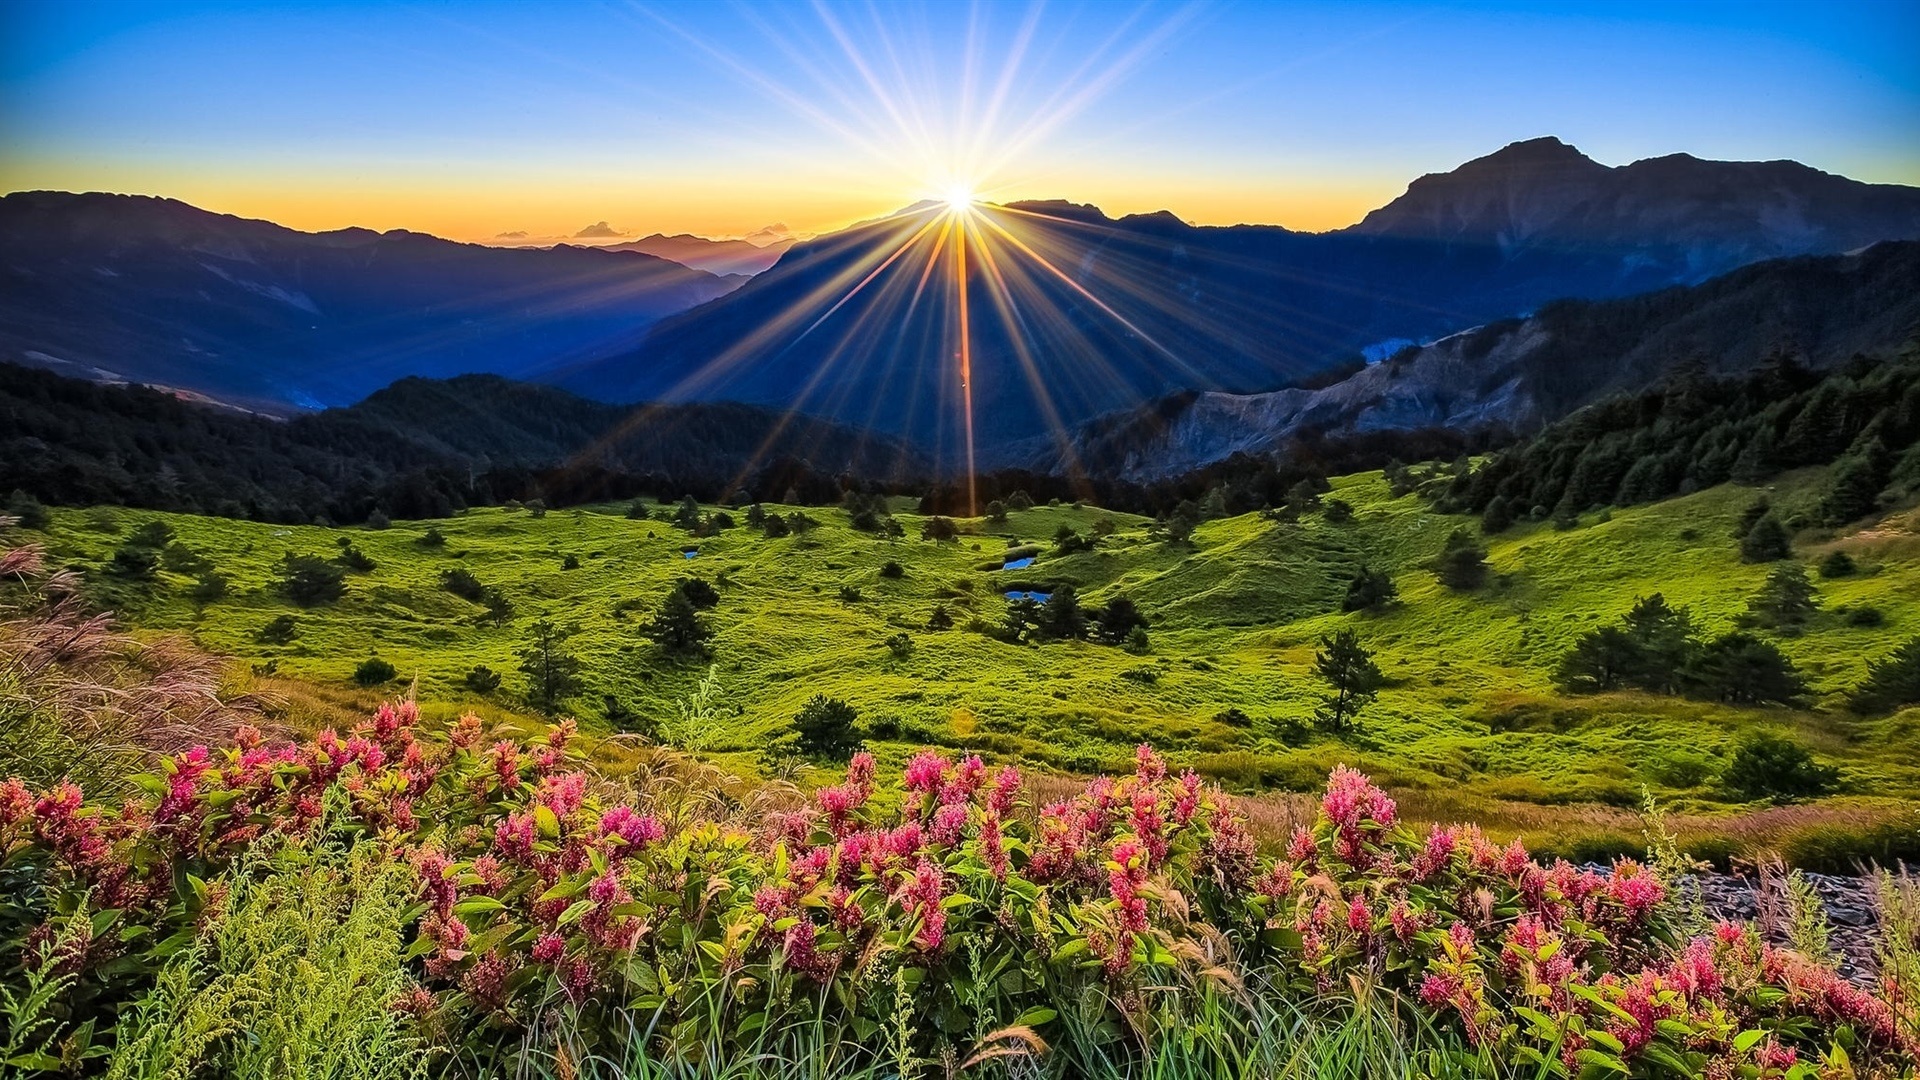 mountains-meadow-sunrise-flowers-beautiful-scenery-1080P-wallpaper.jpg